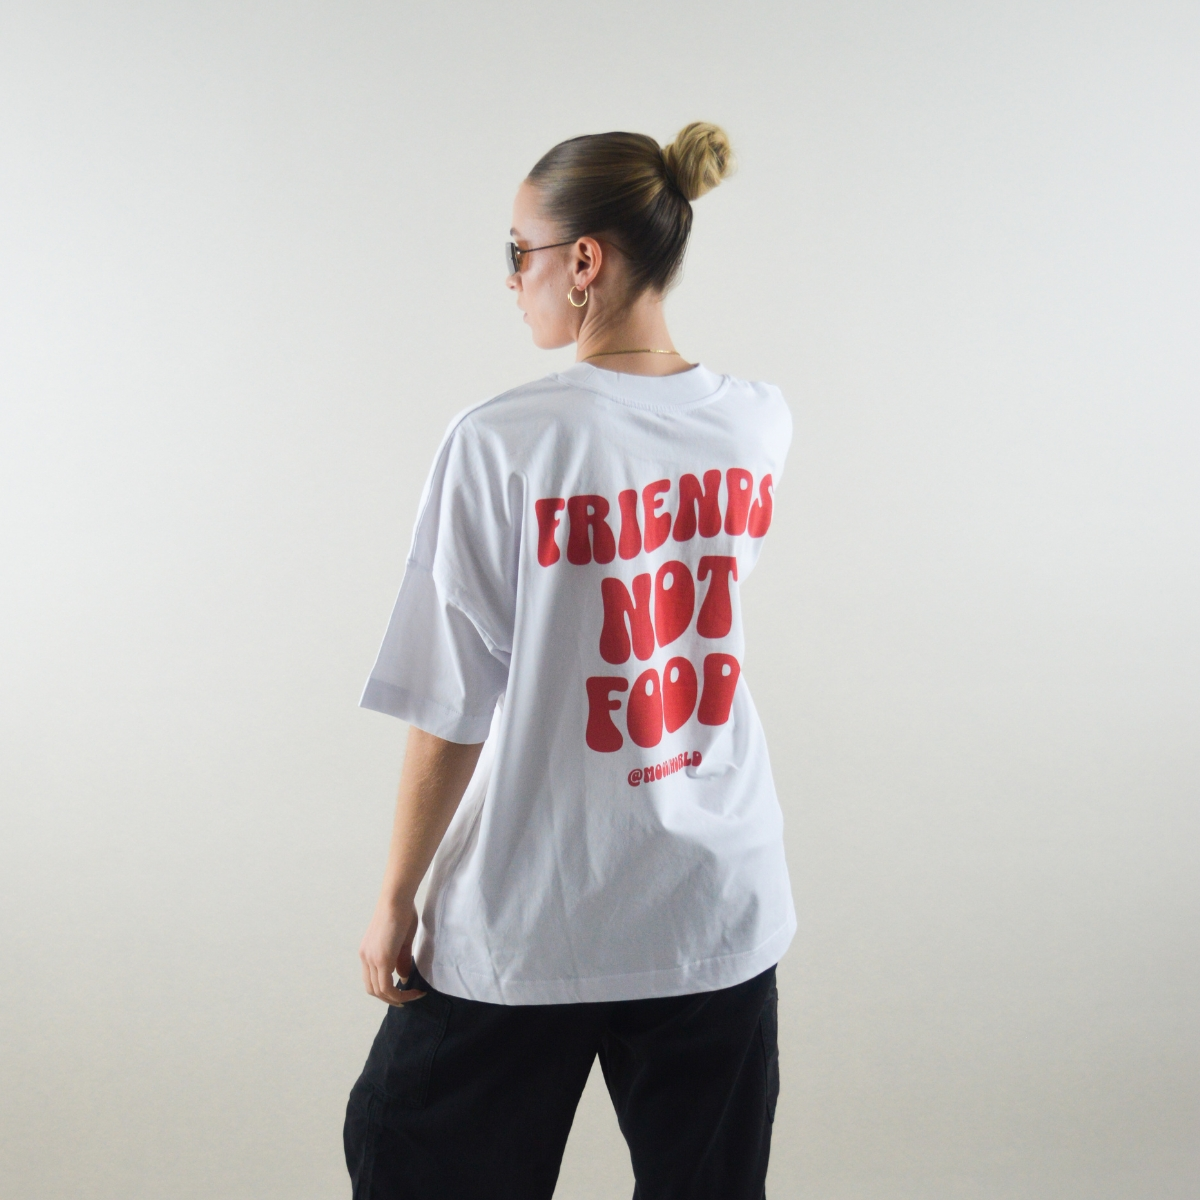 Kategoriebild von Alle Shirts: 'FRIENDS NOT FOOD Wave' Organic Oversize Shirt in der Farbe White getragen von einem weiblichen Model